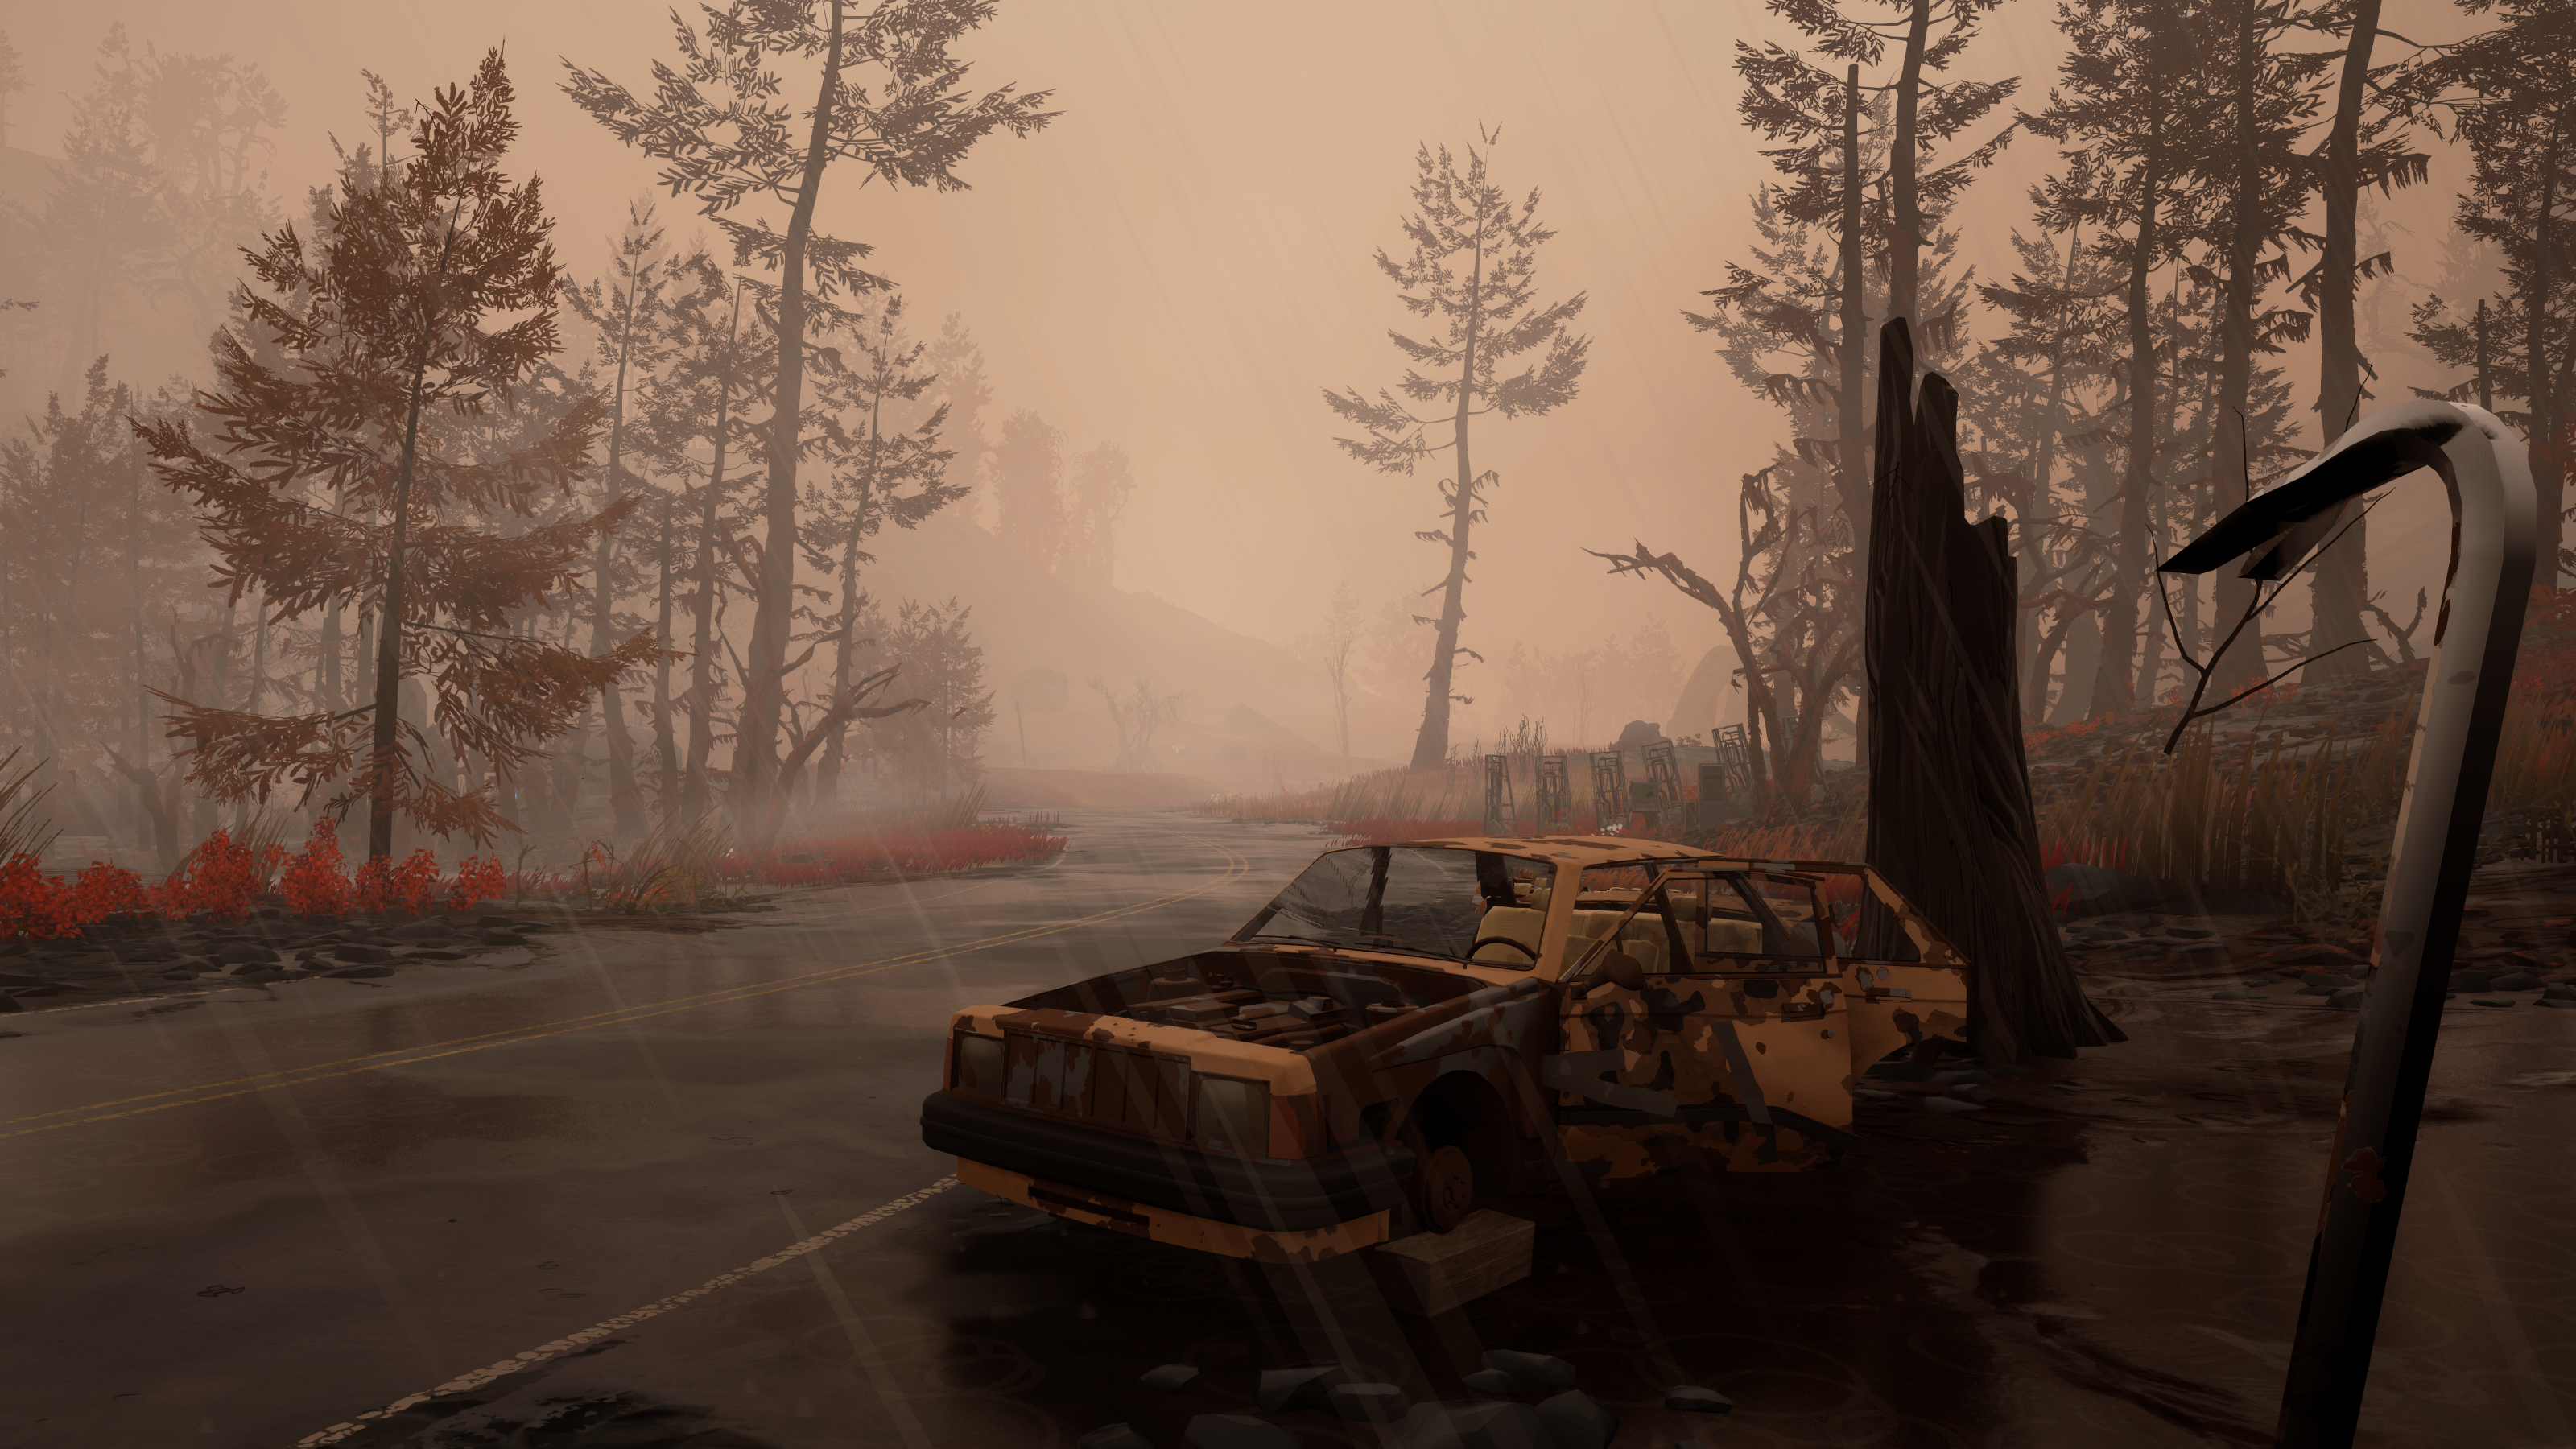 Pratinjau Pacific Drive - mobil yang ditinggalkan di pinggir jalan dalam kabut cokelat, pemain memegang linggis sebagai orang pertama